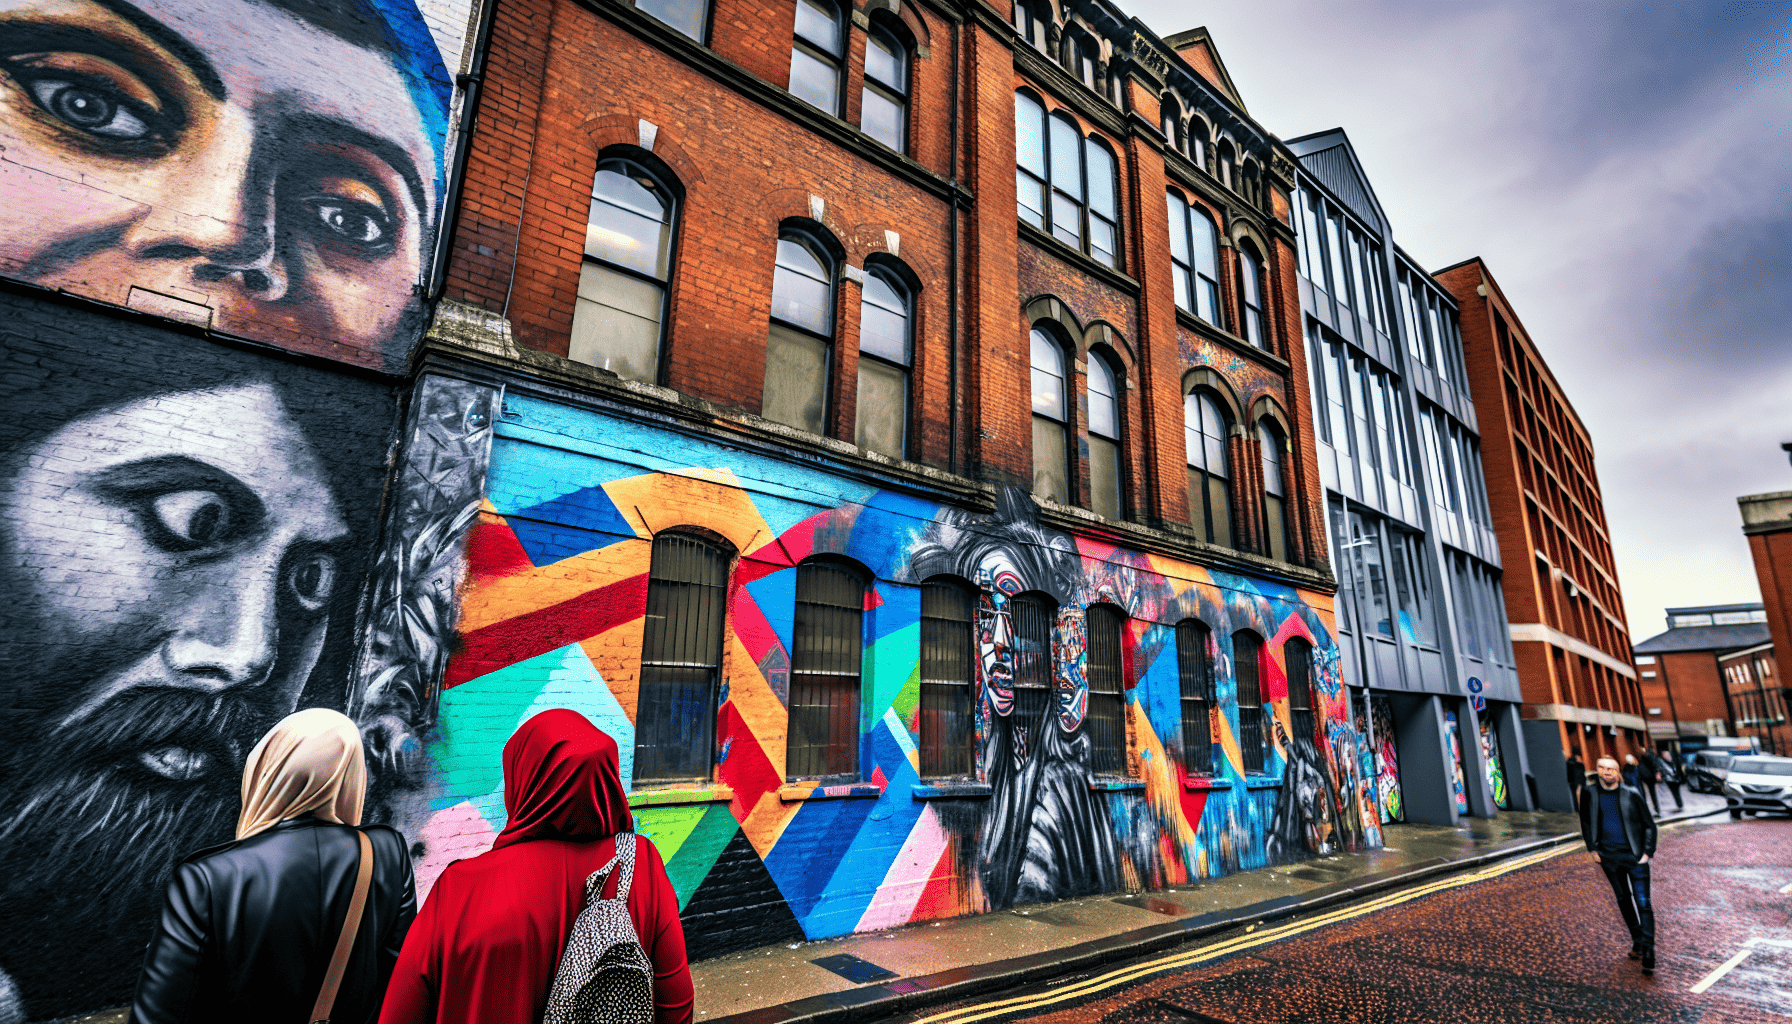 Vibrant street art in Belfast city center